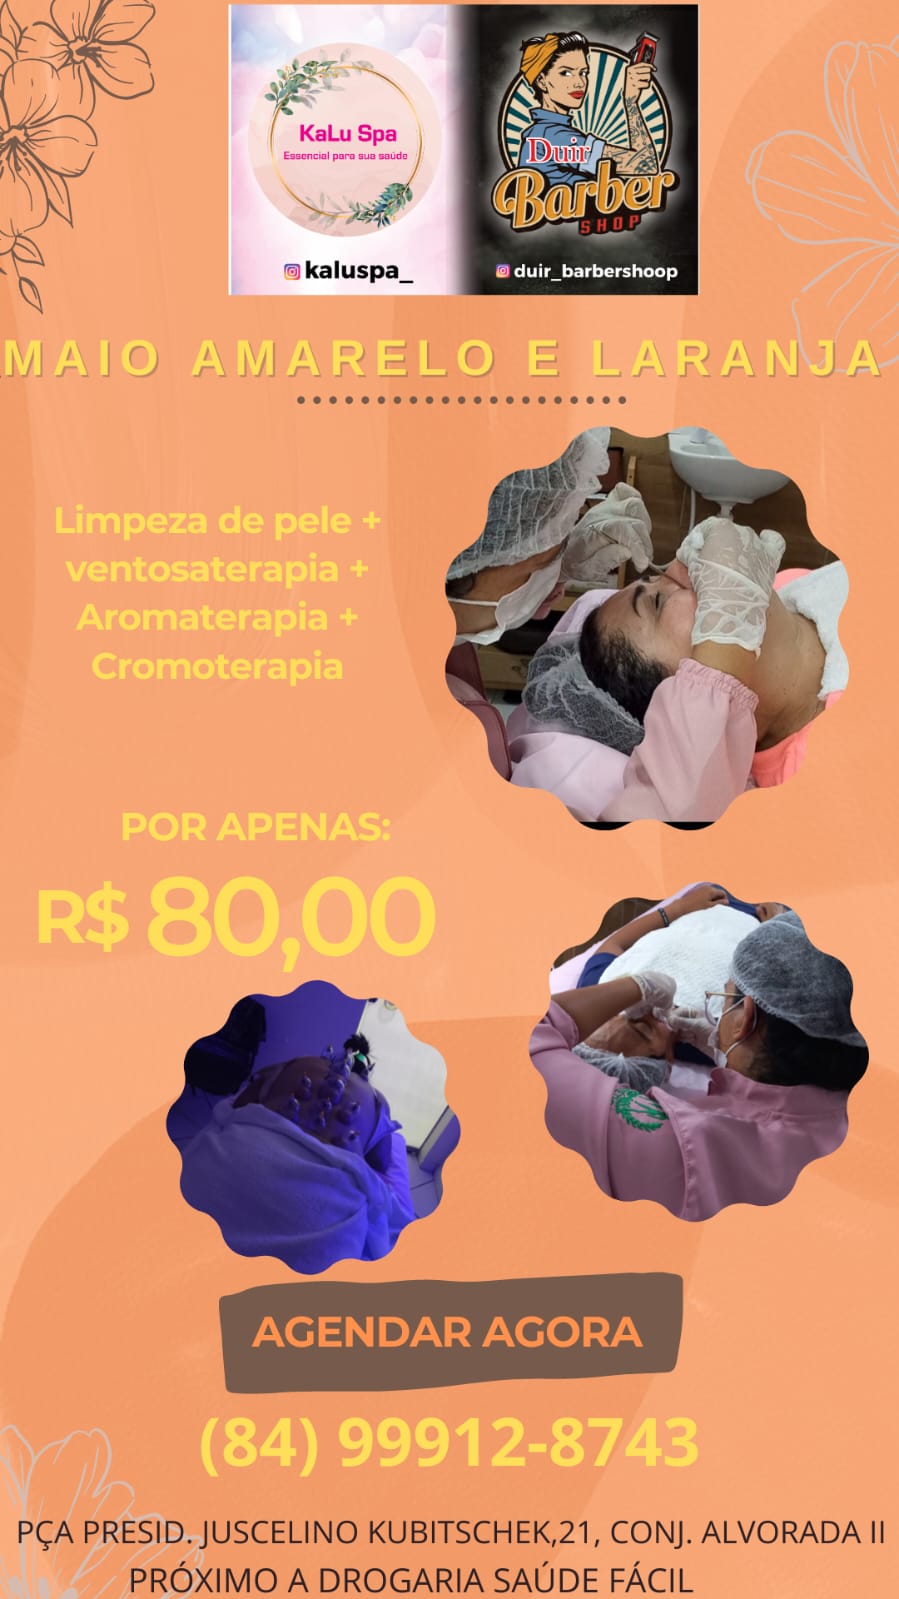 Promoção: LIMPEZA DE PELE + VENTOSATERAPIA + AROMATERAPIA + CROMOTERAPIA